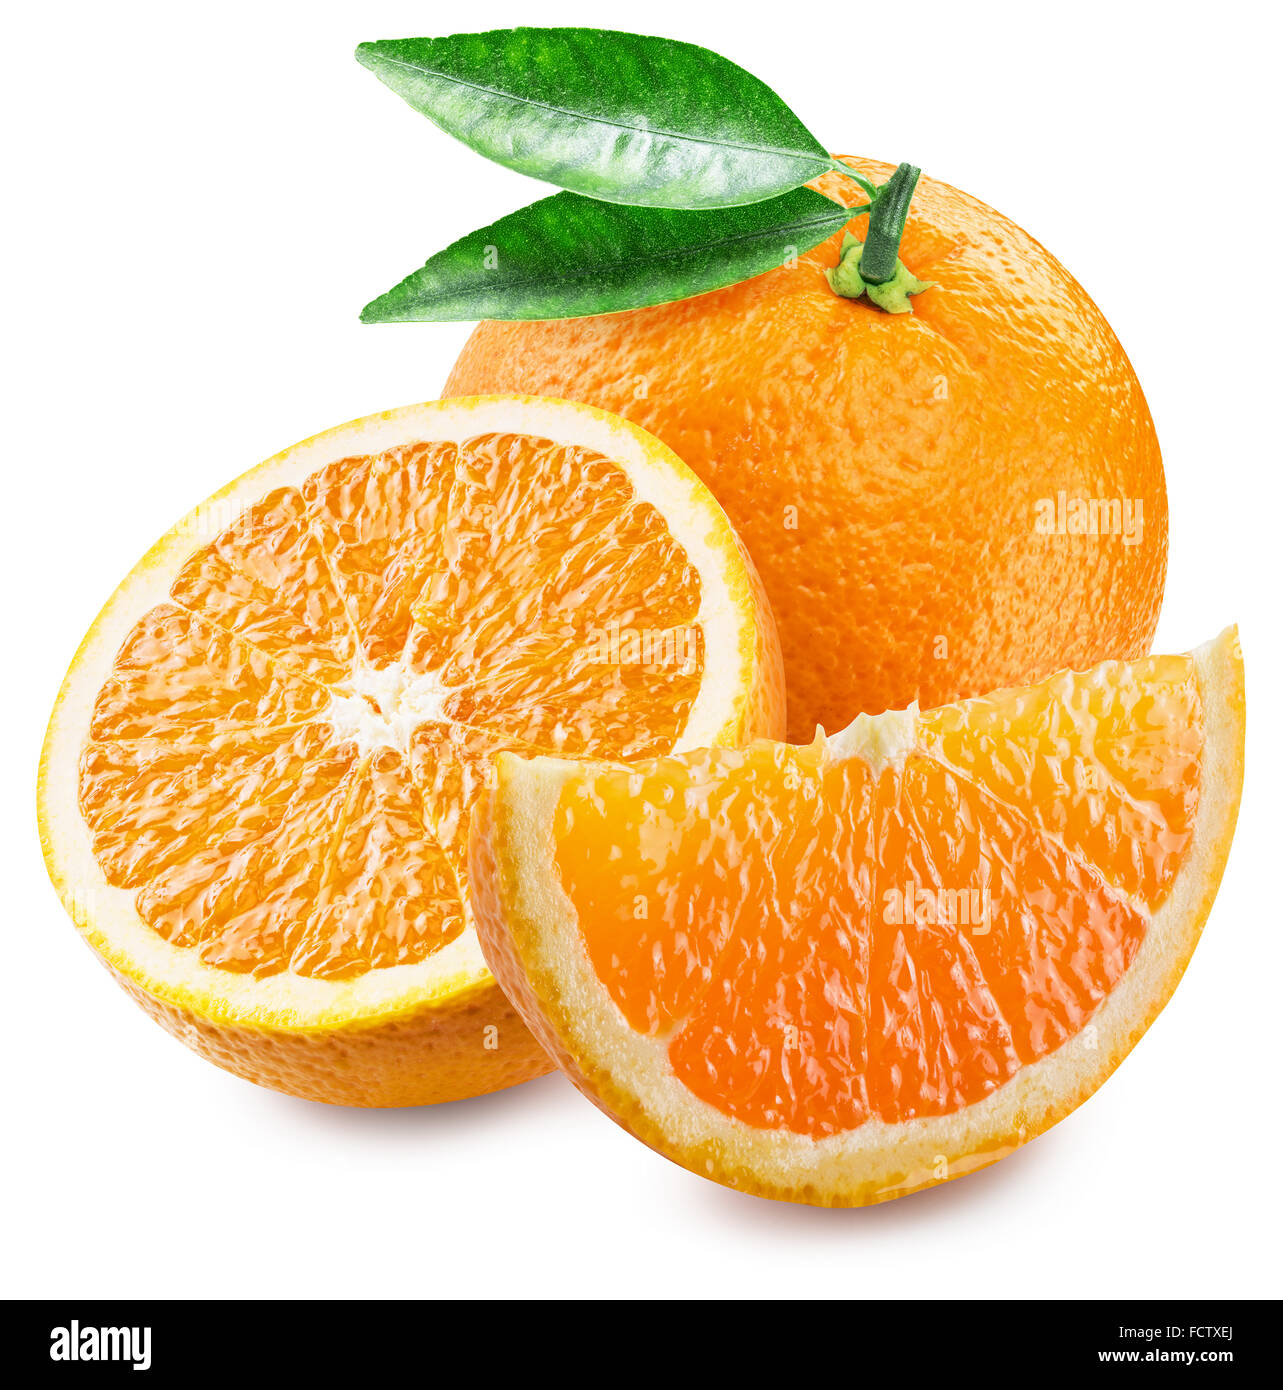 Orange Frucht und Scheiben. Datei enthält Beschneidungspfade. Stockfoto